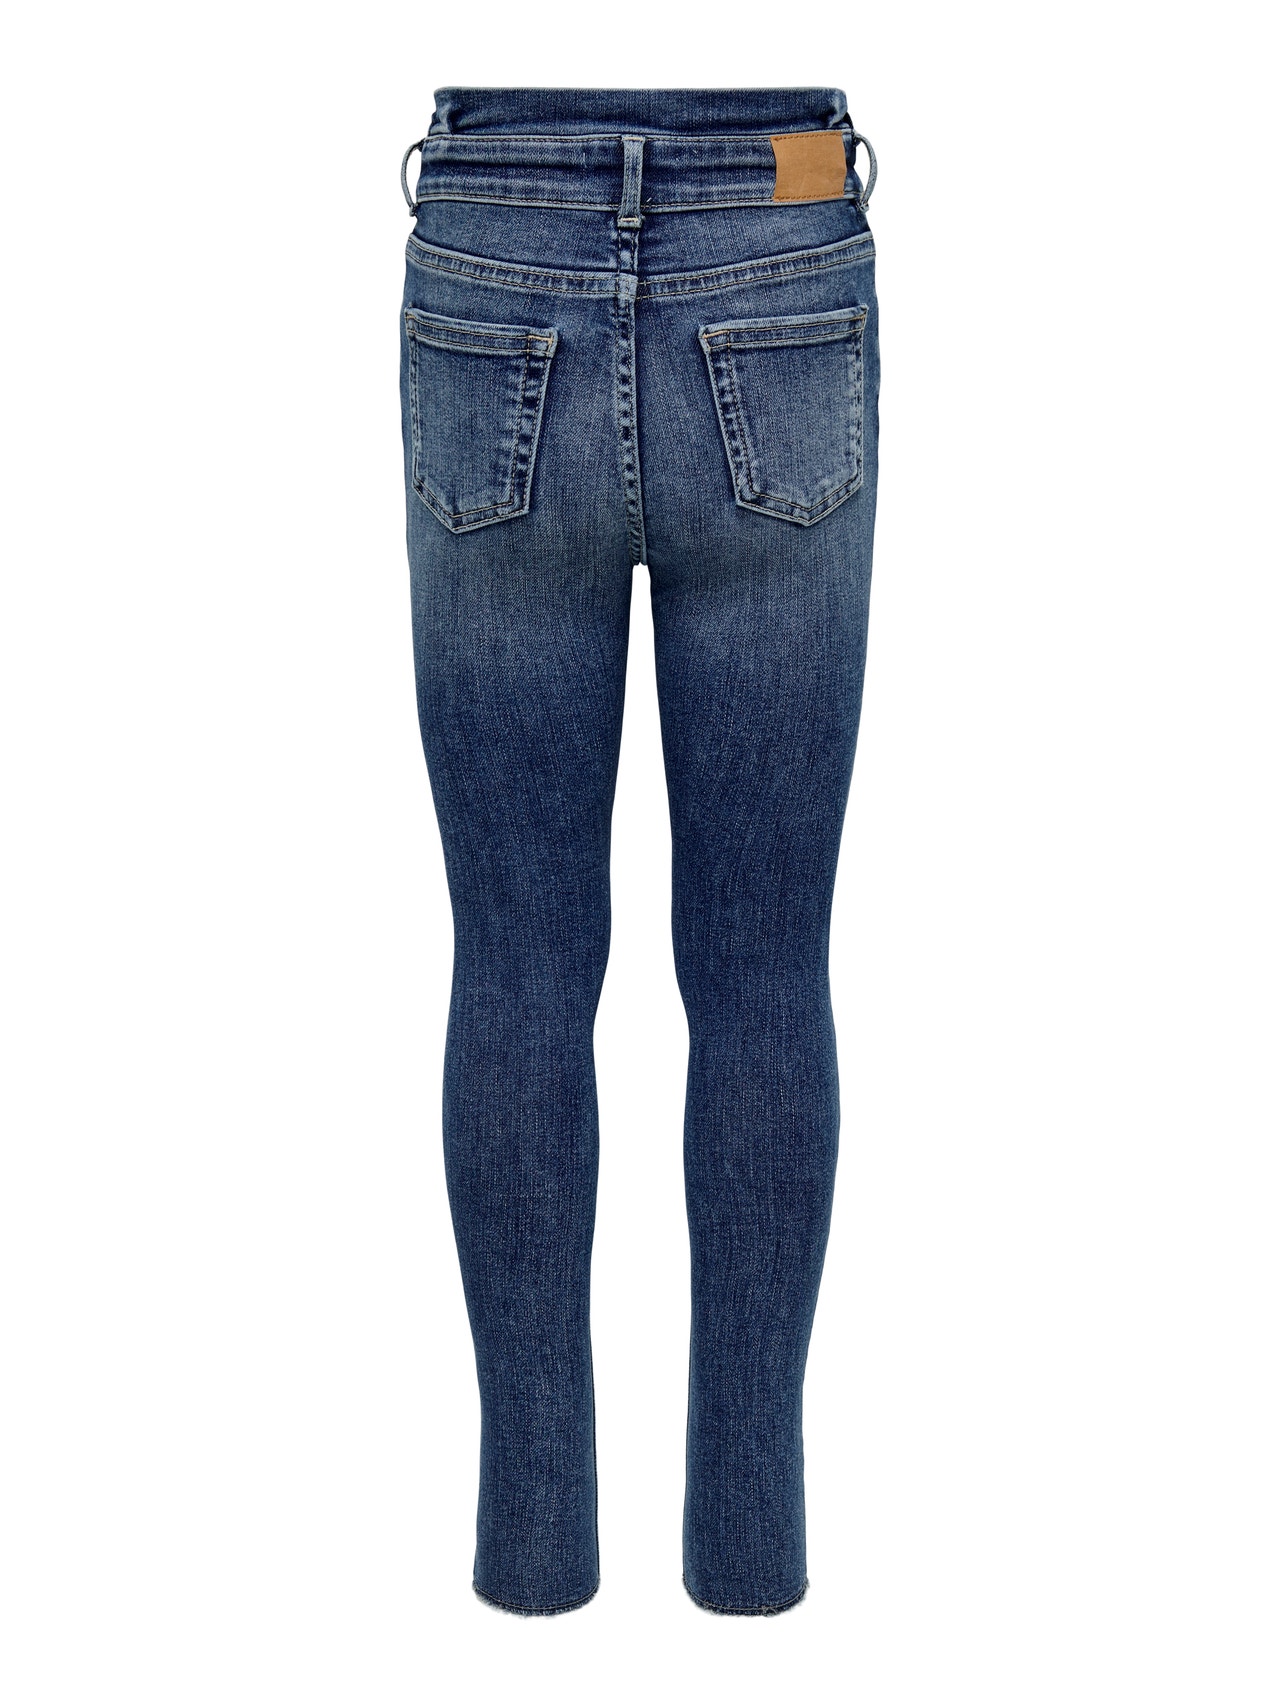 ONLY Skinny Fit Destroyed hems Jeans -Medium Blue Denim - 15269602